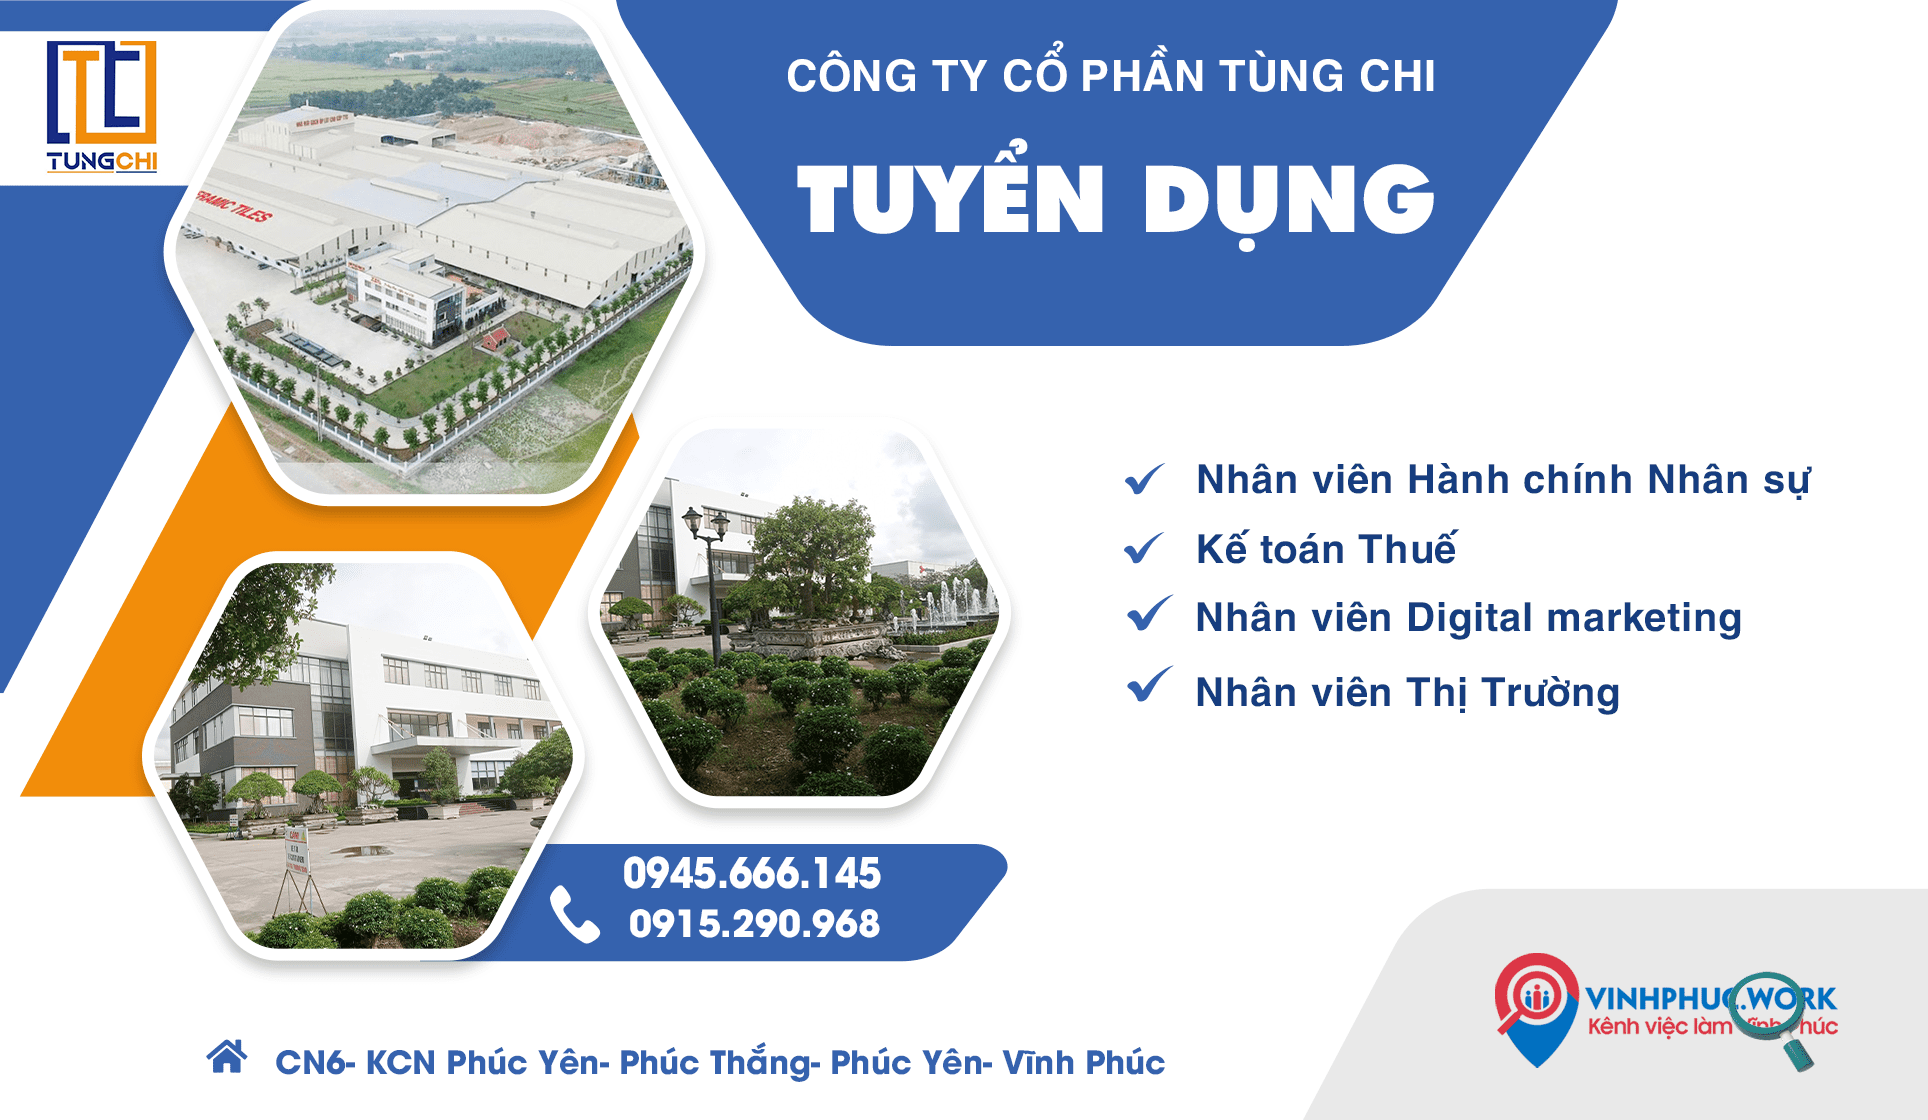 Cong Ty Co Phan Tung Chi Sai Gon Thong Bao Tuyen Dung Nhieu Vi Tri Tot 8